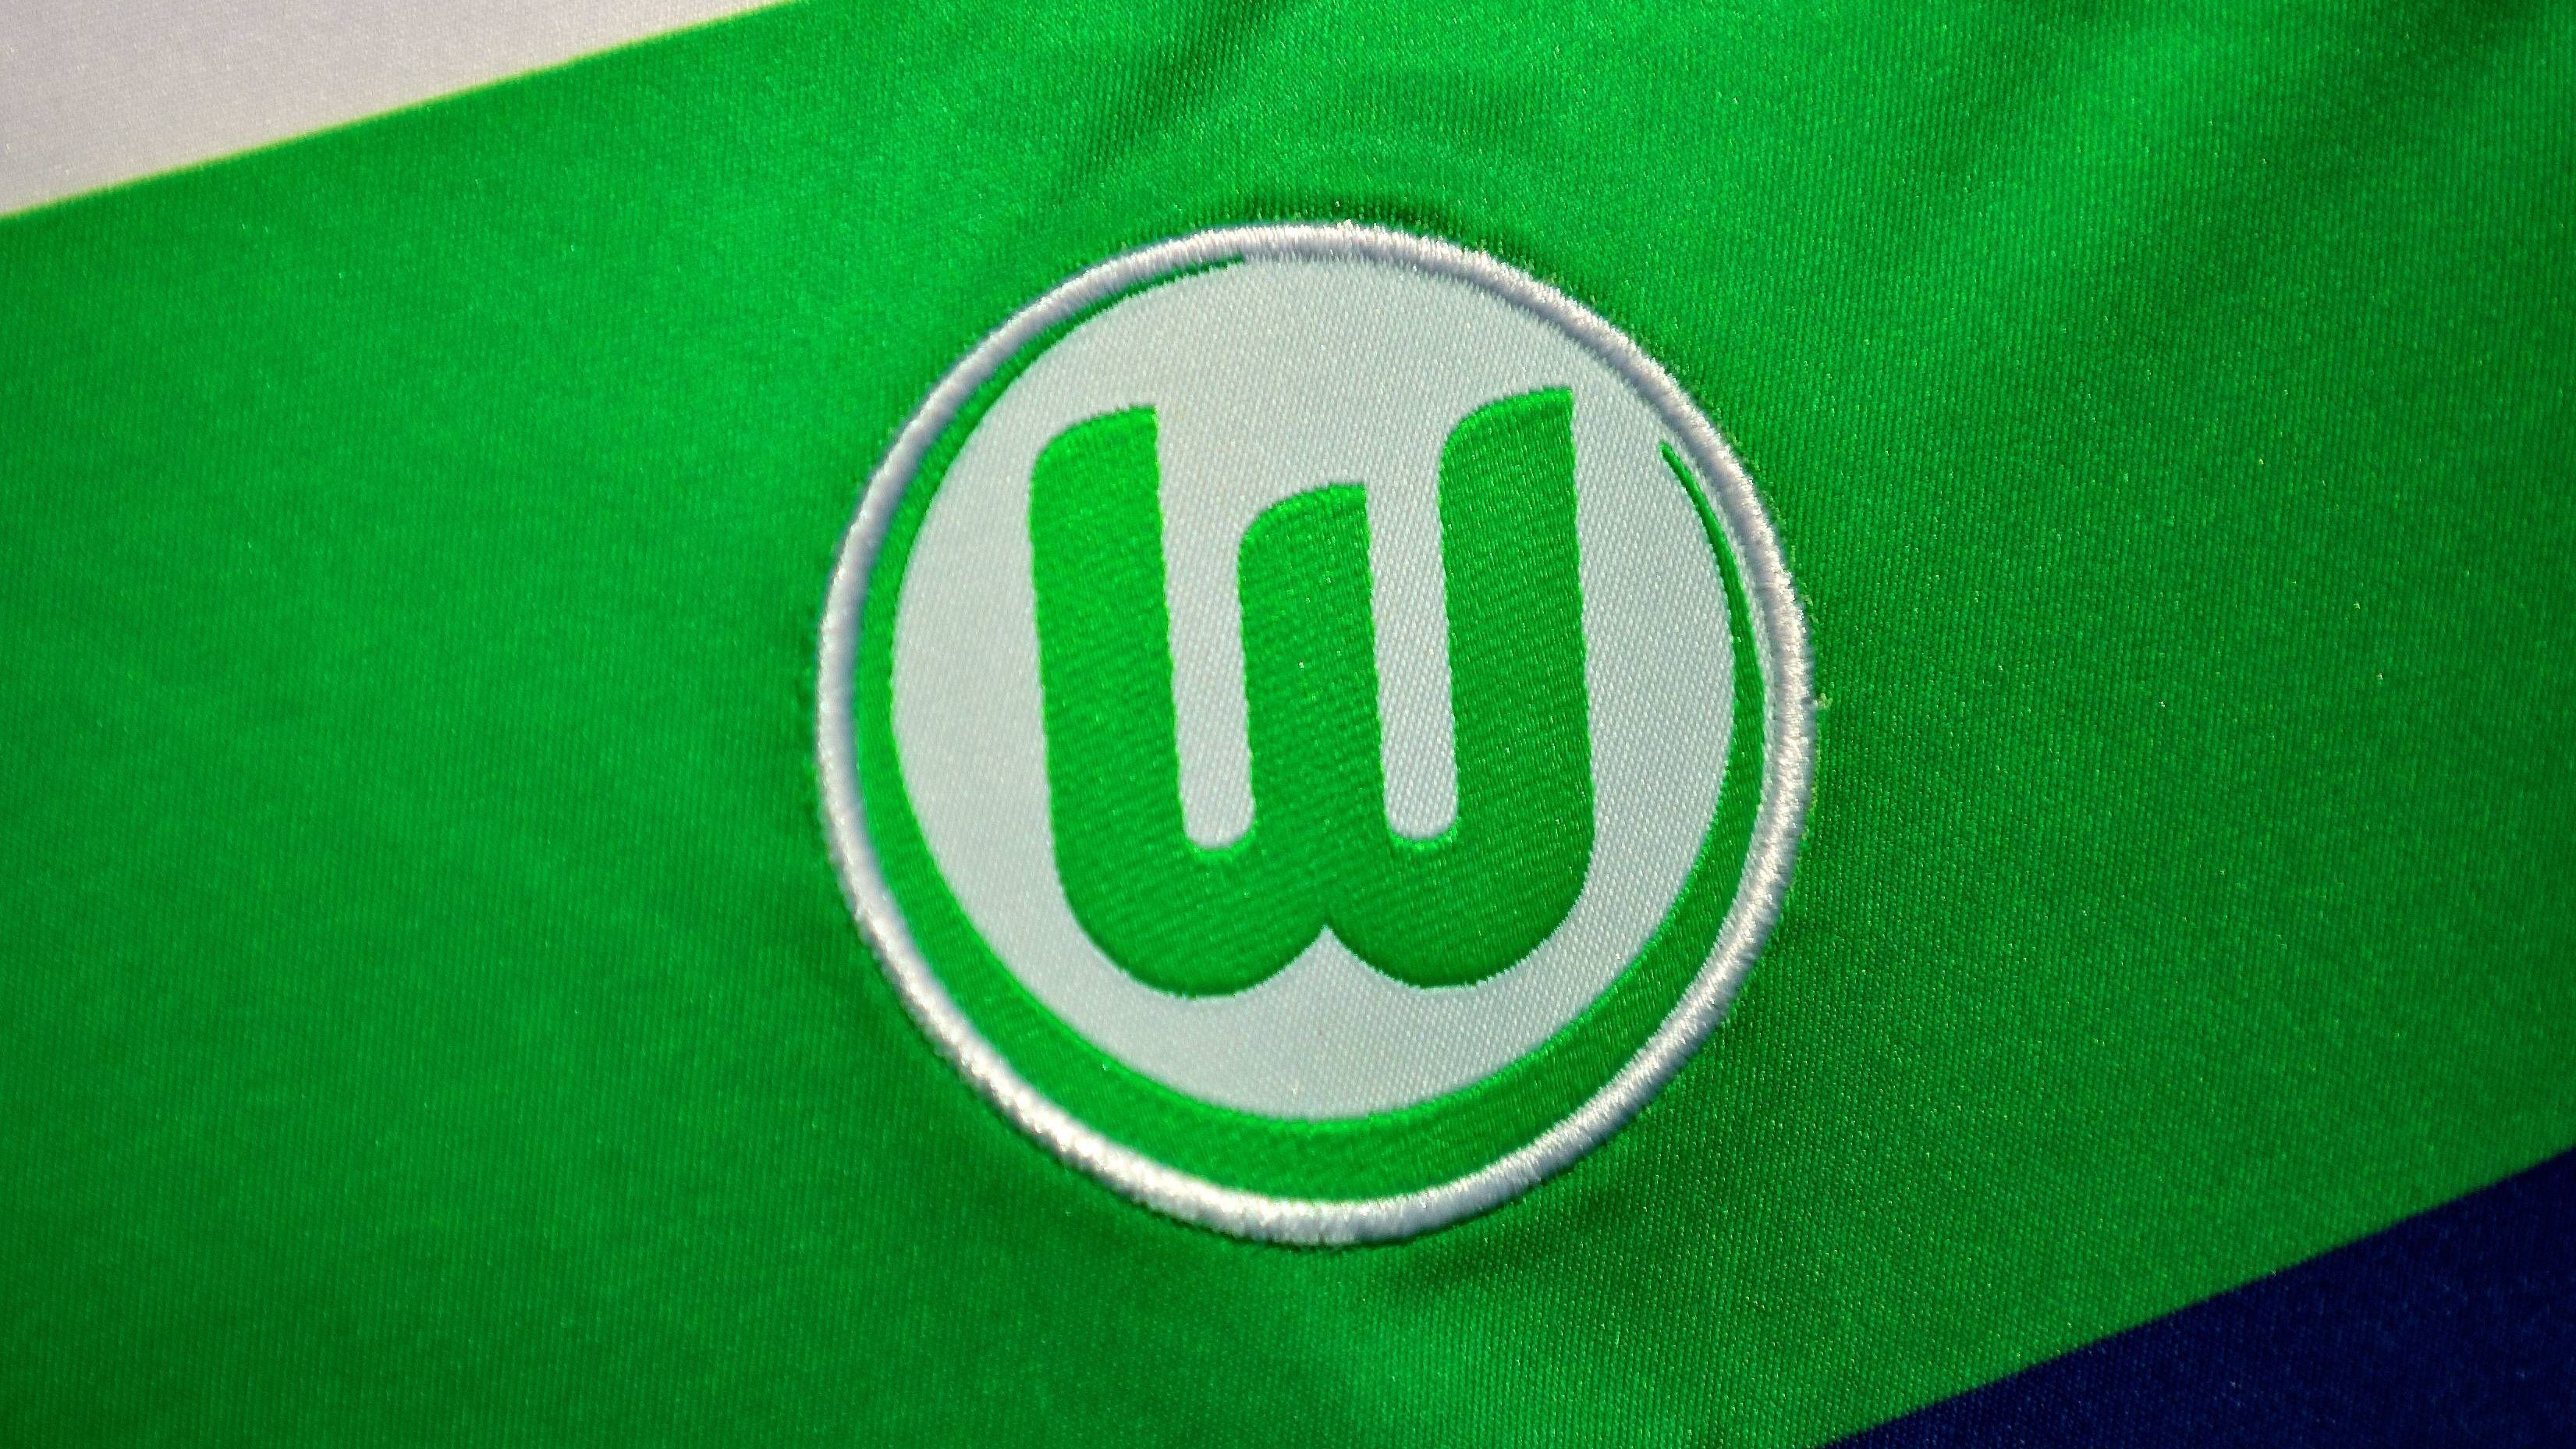 <strong>Platz 15: VfL Wolfsburg (12. September 1945)</strong><br>Der VfL Wolfsburg wurde am 12. September 1945 als "Verein für Leibesübungen Wolfsburg" gegründet. Der Anfang war steinig. Kurz nach dem Krieg fehlte es "den Wölfen" an Kleidung und finanziellen Mitteln.<br><br><strong>Saisons in der Bundesliga: 26</strong>